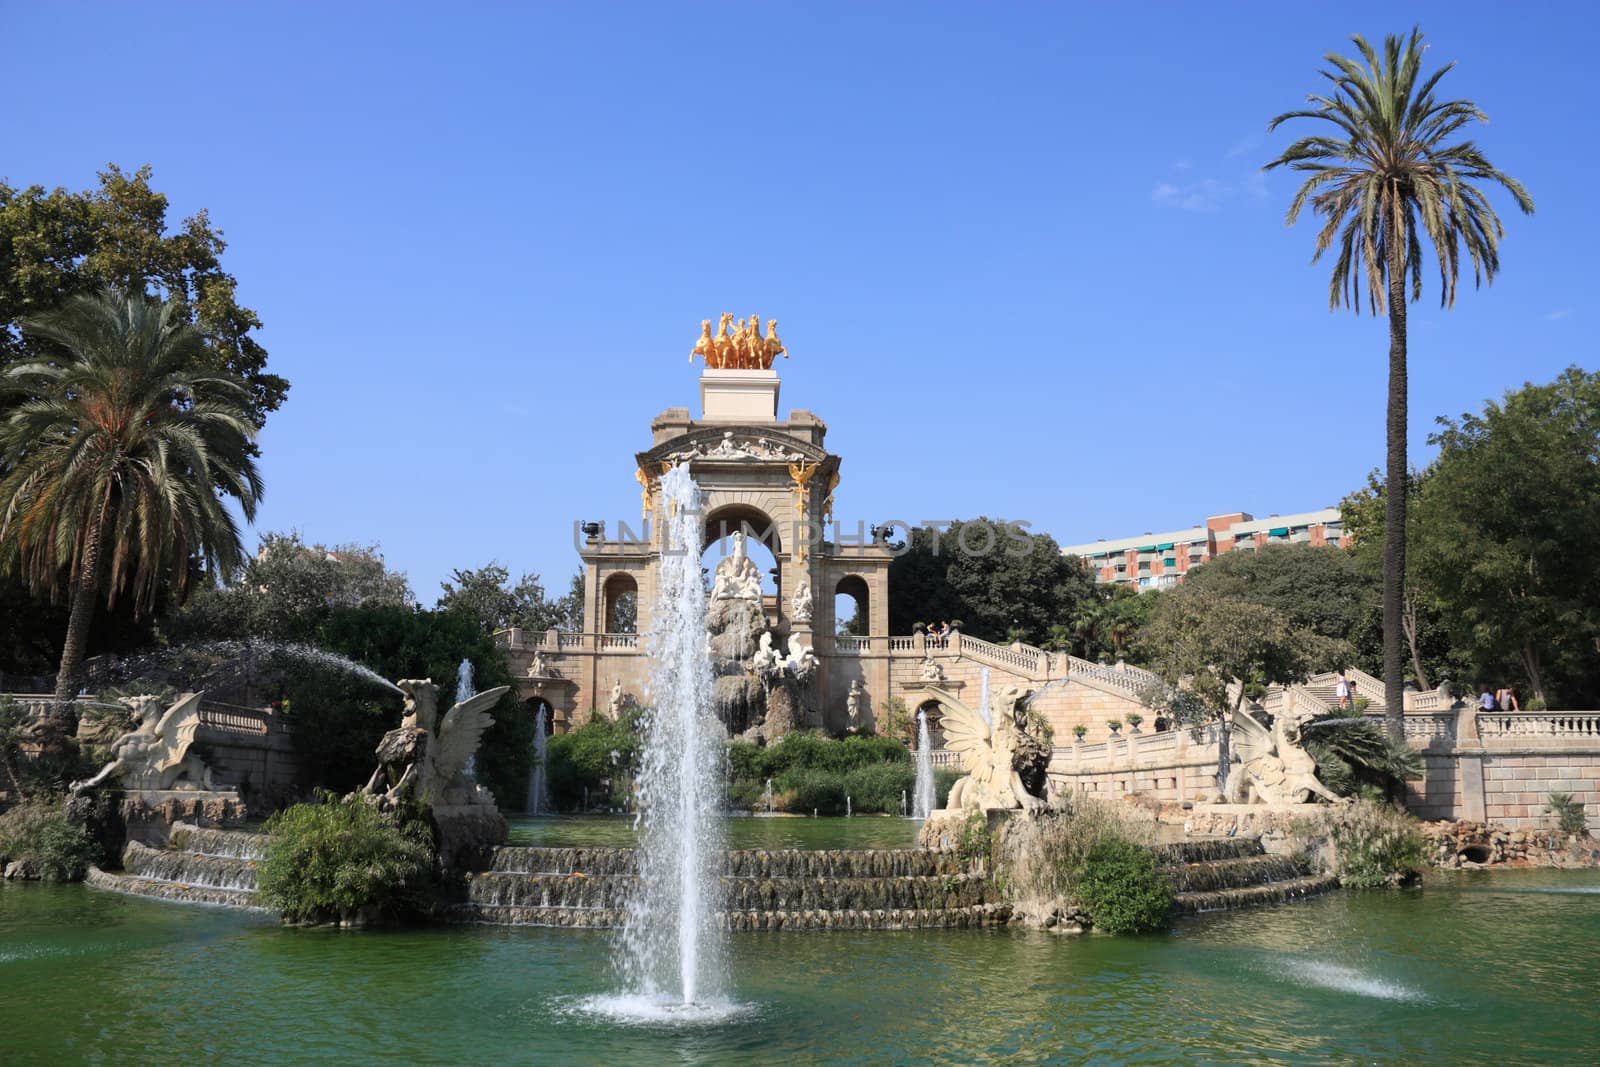 Barcelona - fountains in famous Parc de la Ciutadella. Cascada structure.